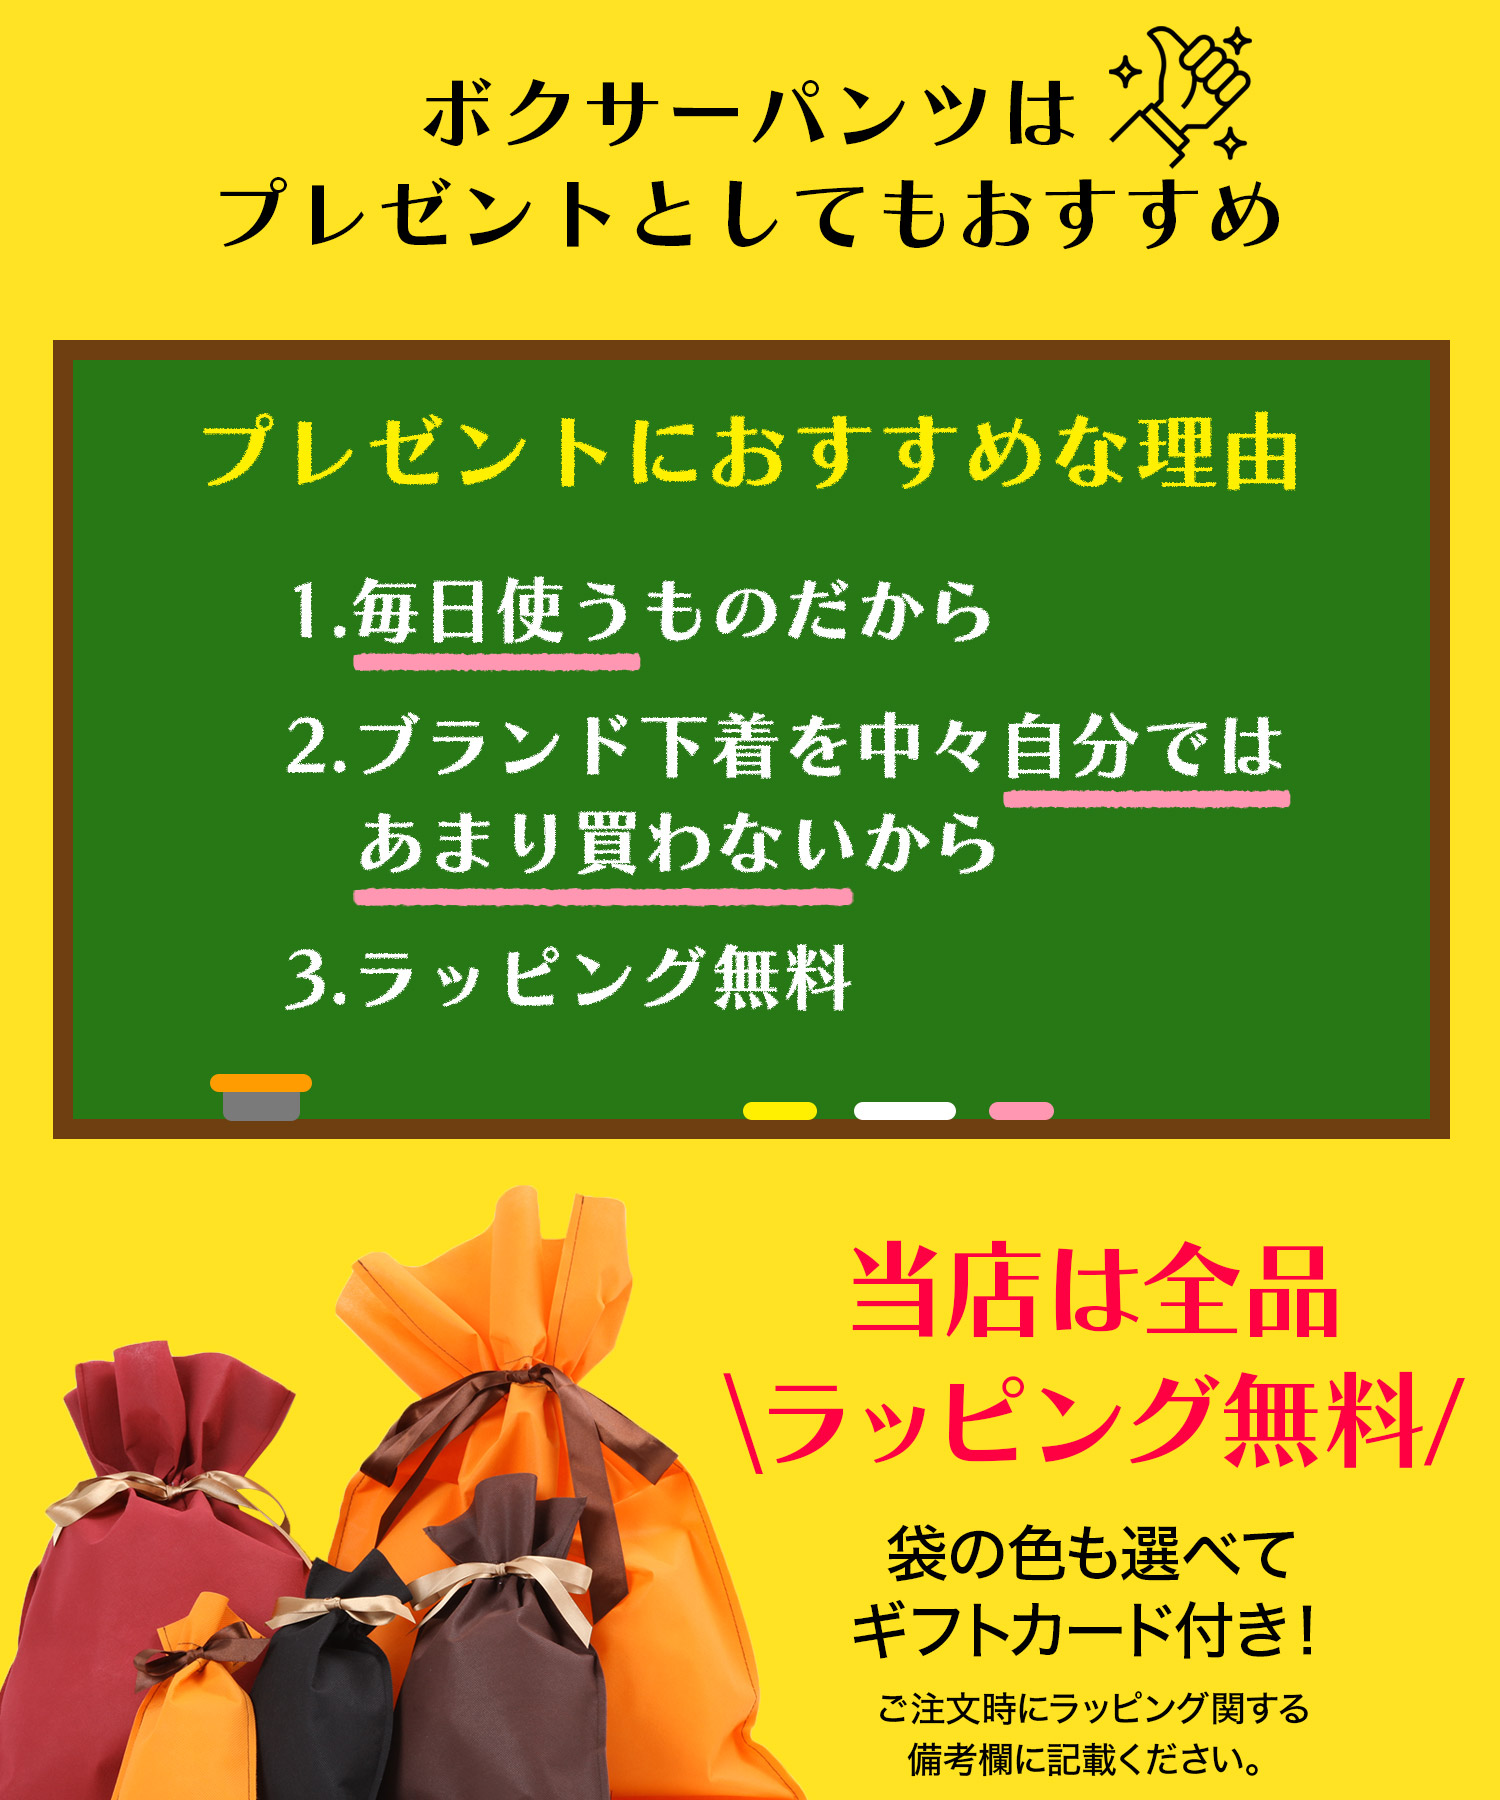 277円 【超新作】 ボクサーパンツ 浮世絵成型ボクサーパンツ 和柄 赤富士 歌舞伎